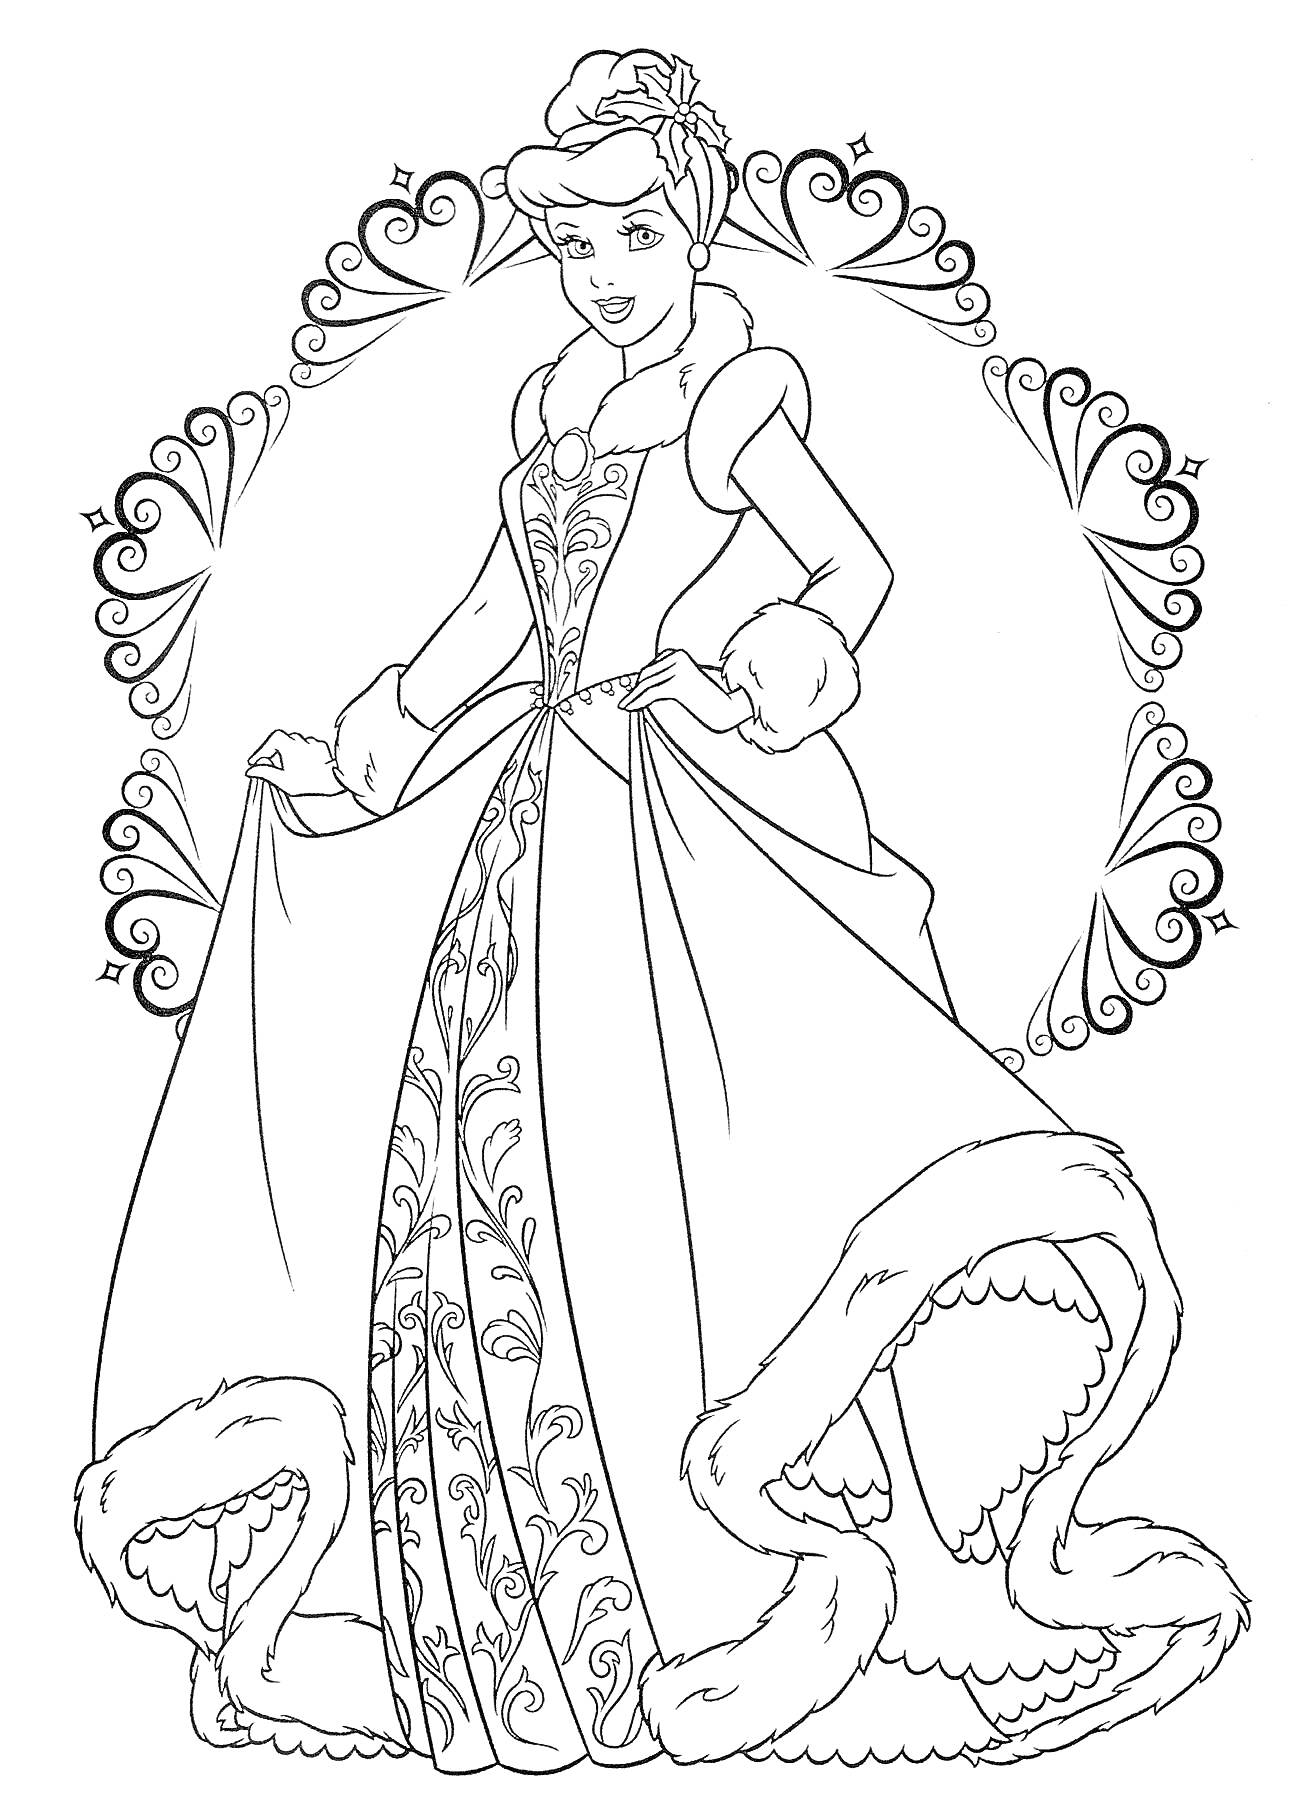 Раскраска Принцесса в элегантном платье с узорами, стоящая в обрамлении узорчатых сердечек